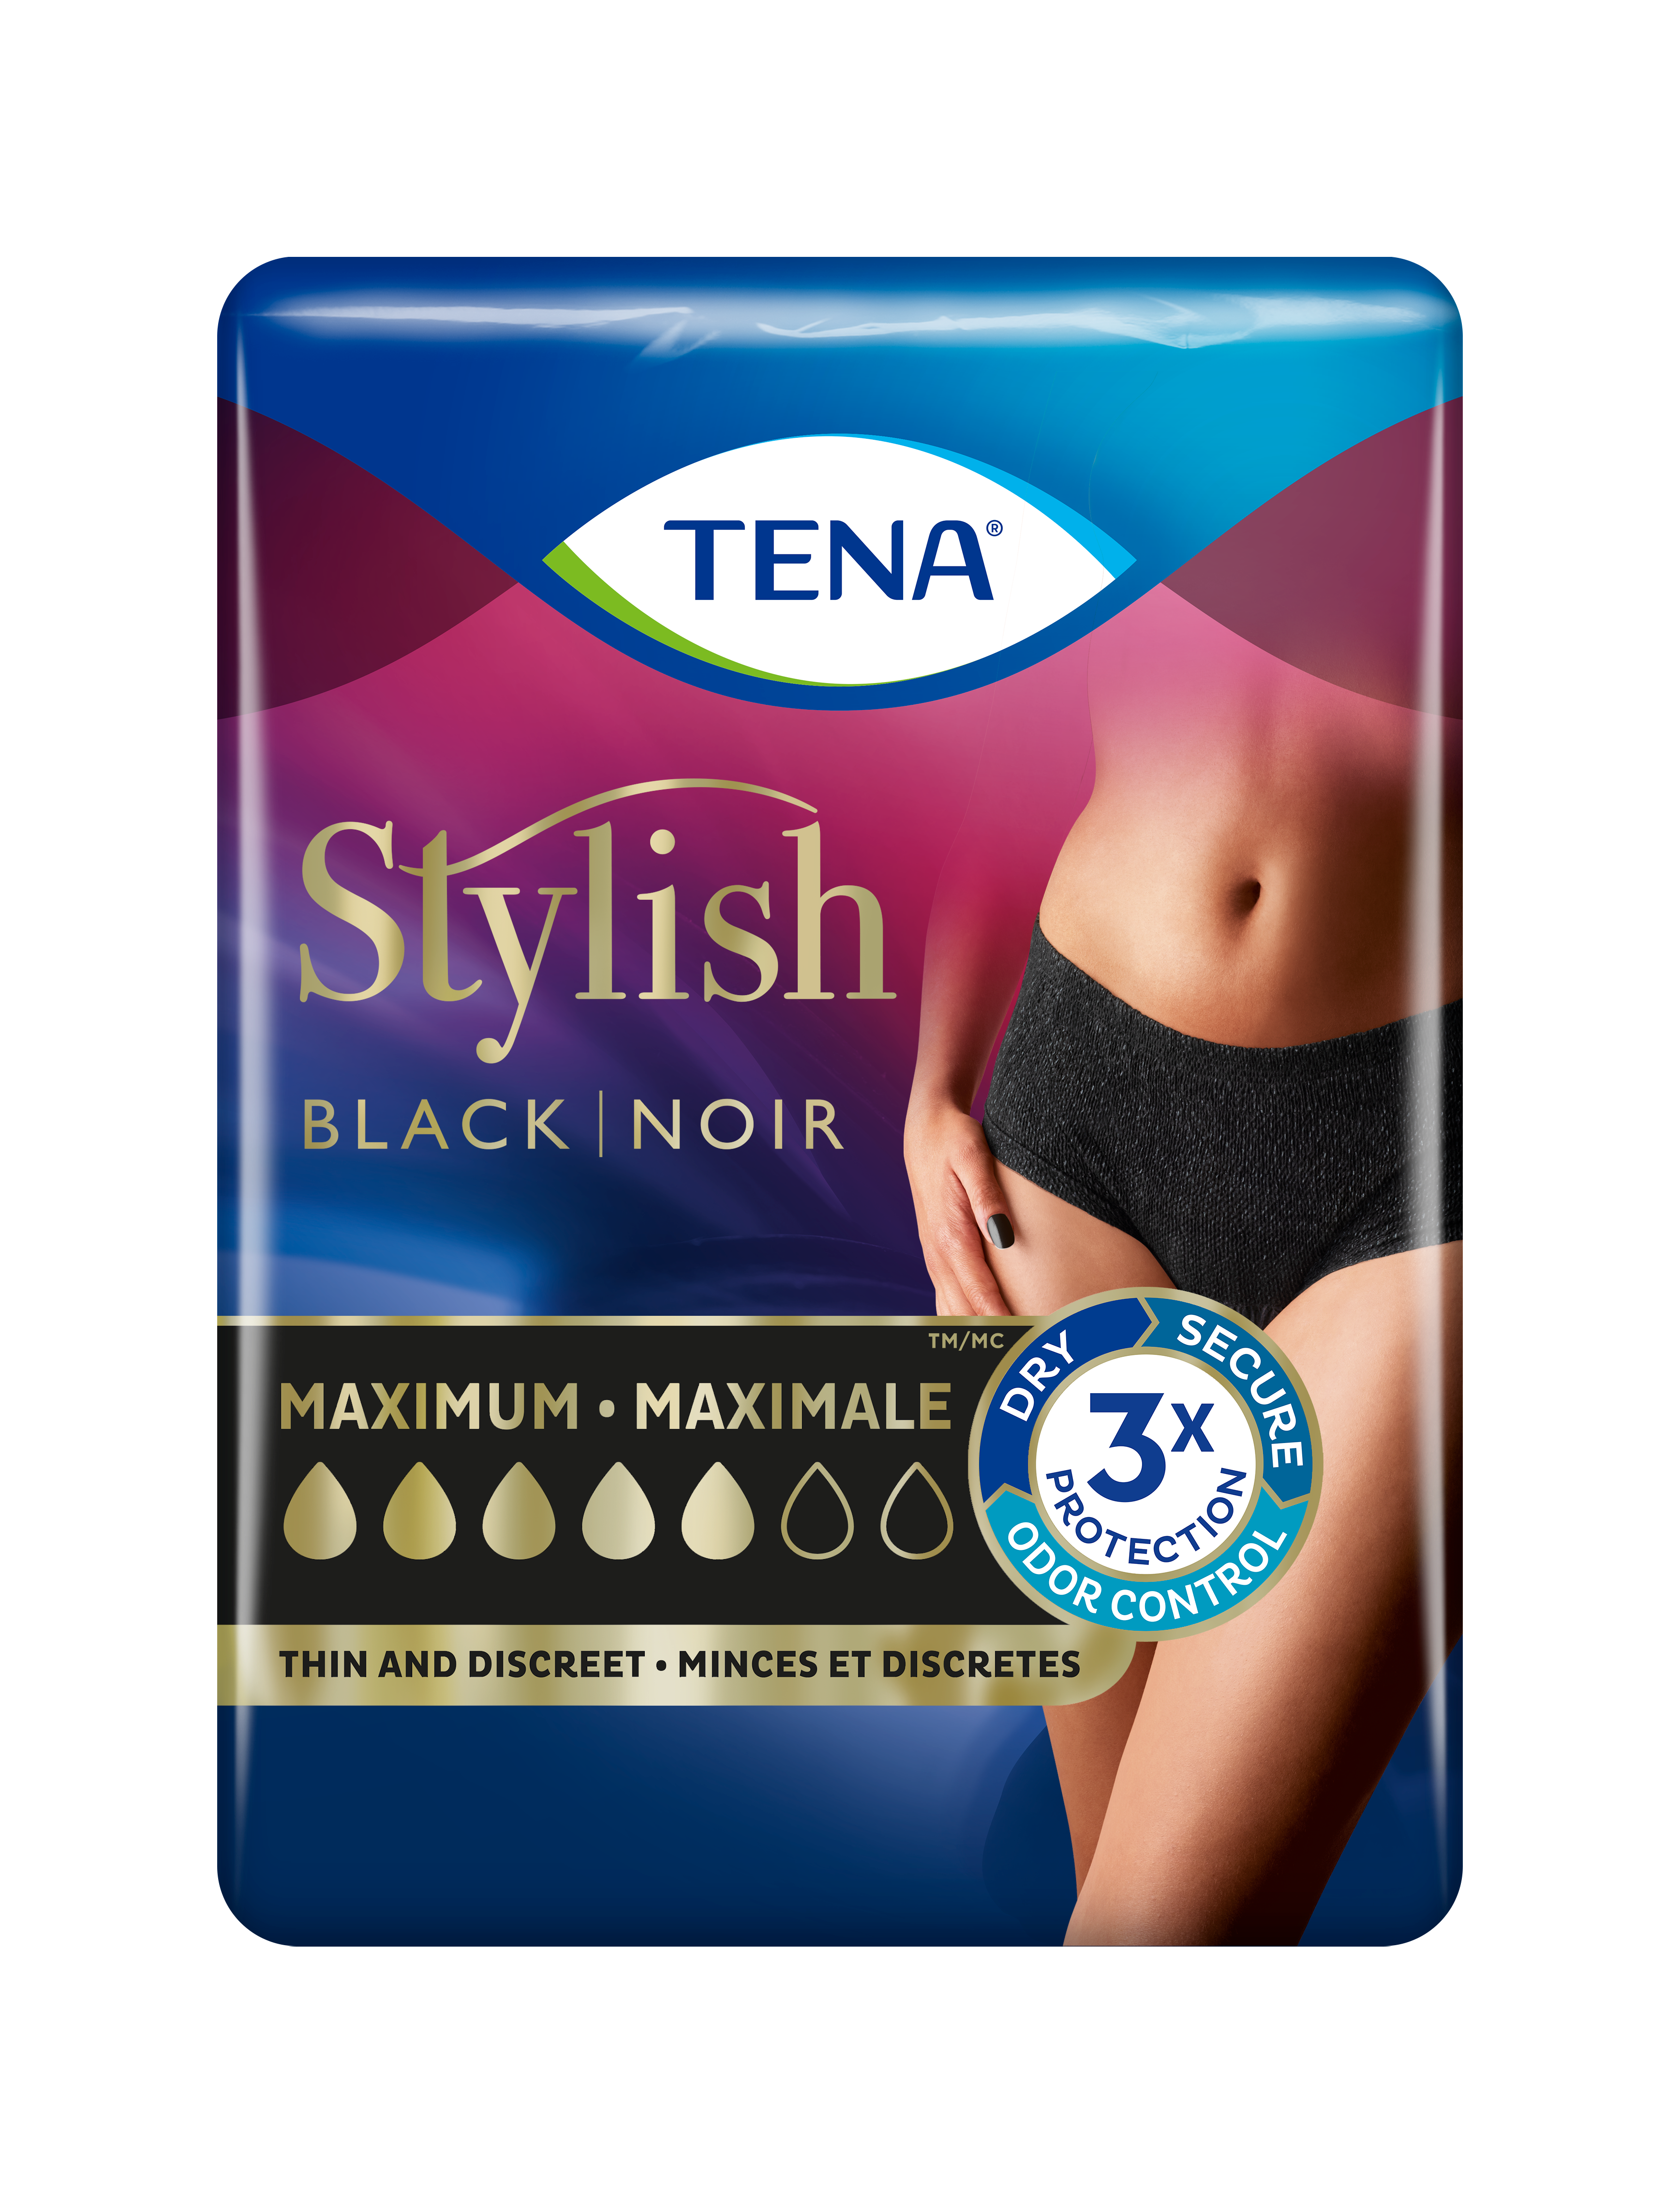 A package of TENA Women Black Stylish Underwear